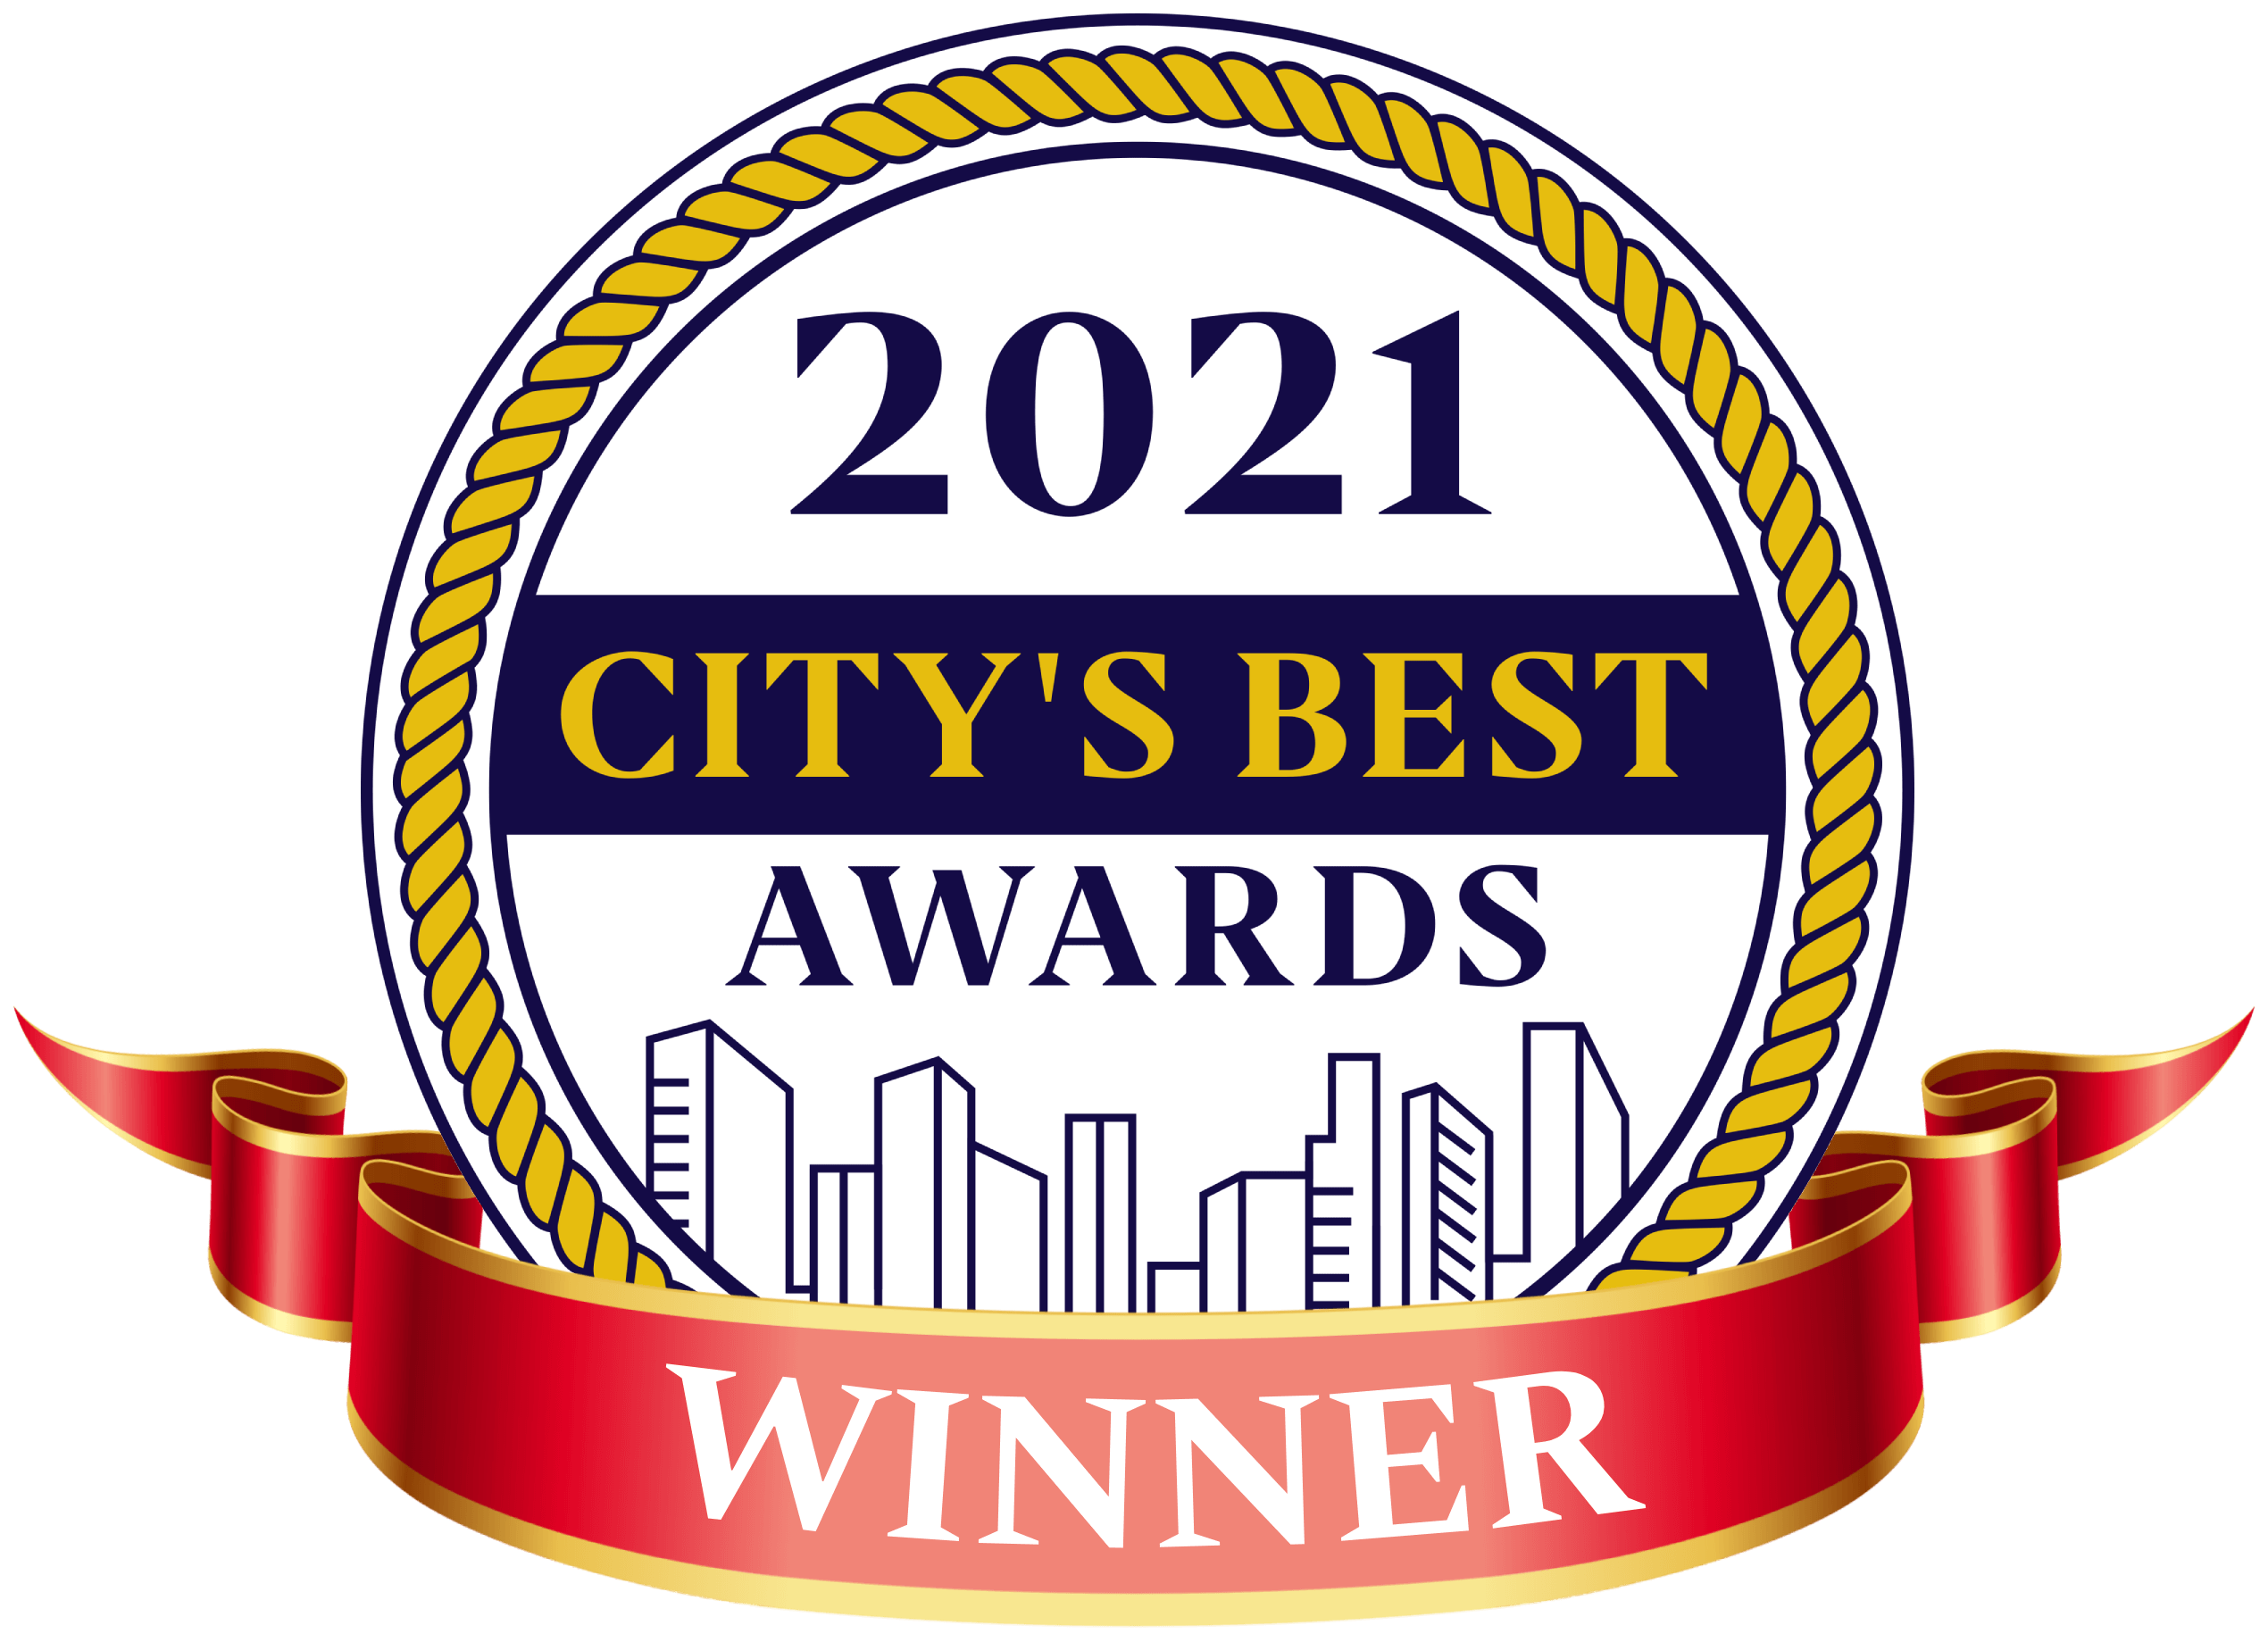 2021 City's Best Awards Winner